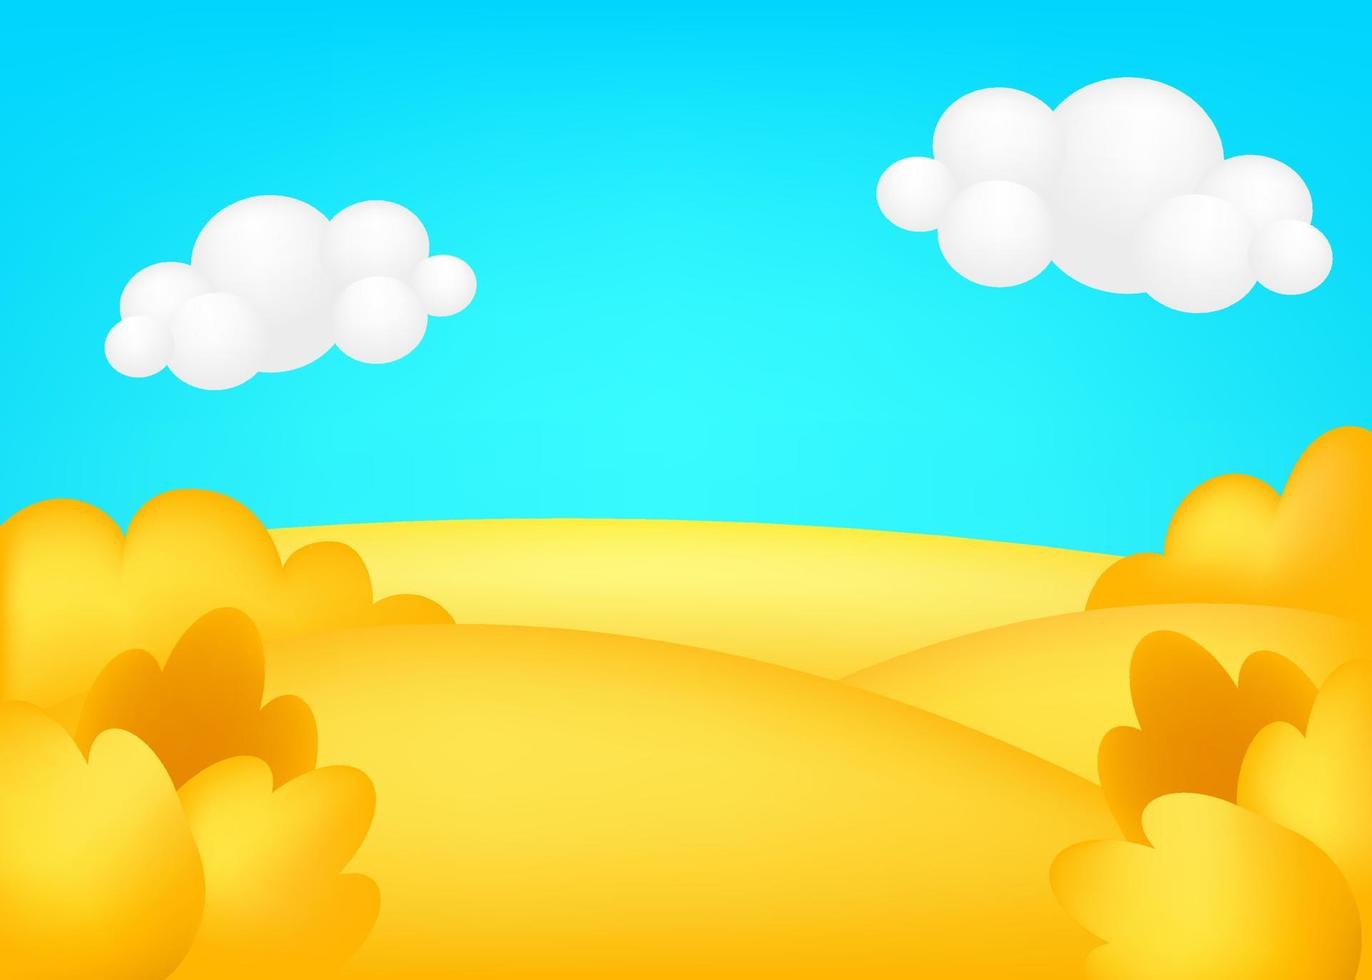 Wiese 3D-Vektor-Illustration. helle landschaft des erntetals, kinderhintergrund. bunte niedliche landschaft mit herbstgelbem feld, bäumen, blauem himmel, wolken für kinderseiten. vektor